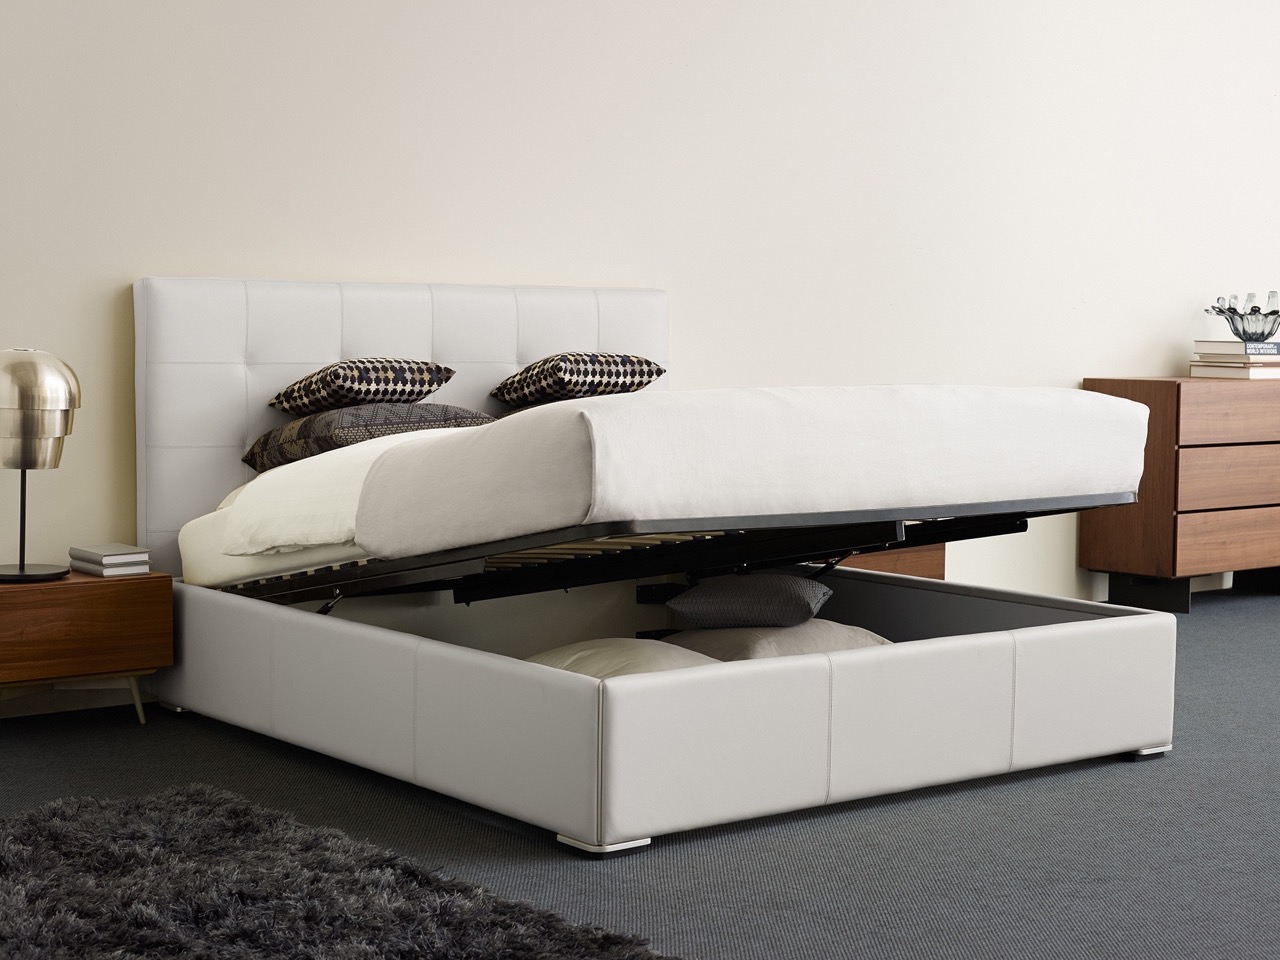 Projekty, jak łóżko Mezzo, udowadniają, że design może być przyjazny. / Foto: BoConcept